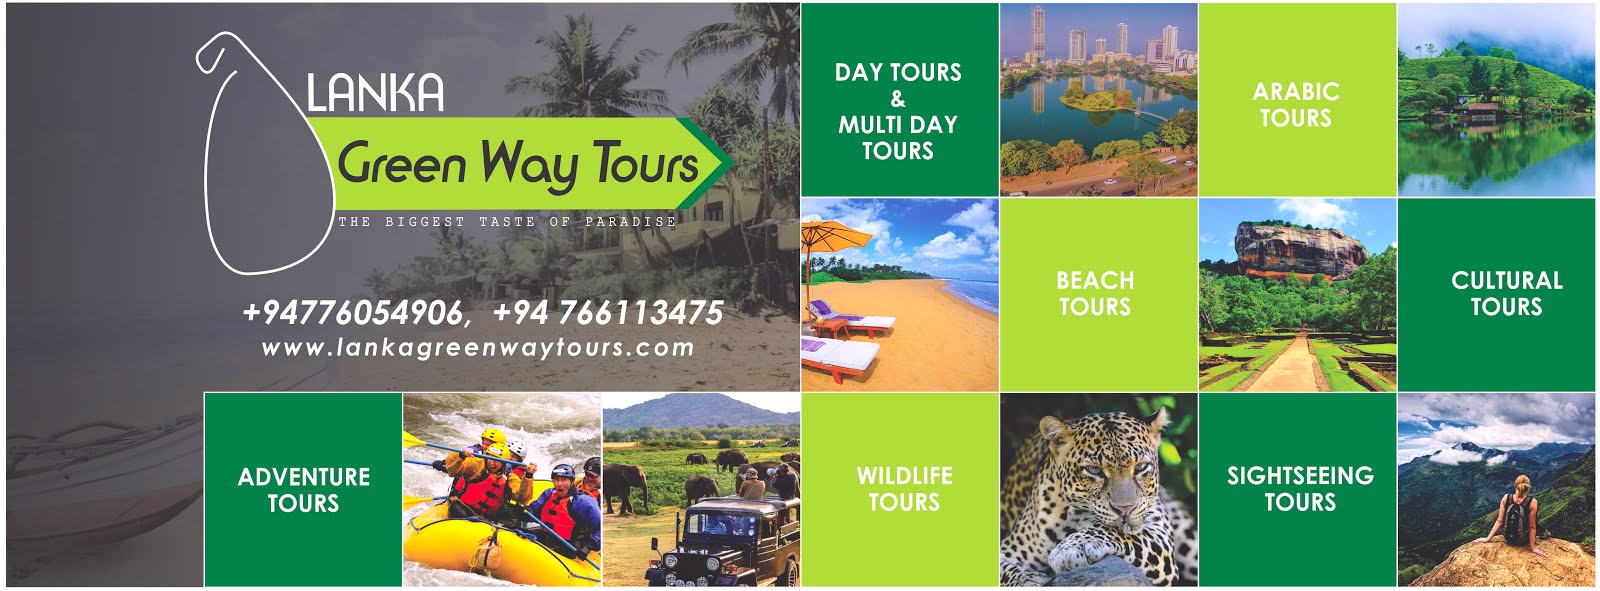 Lanka Green Way Tours